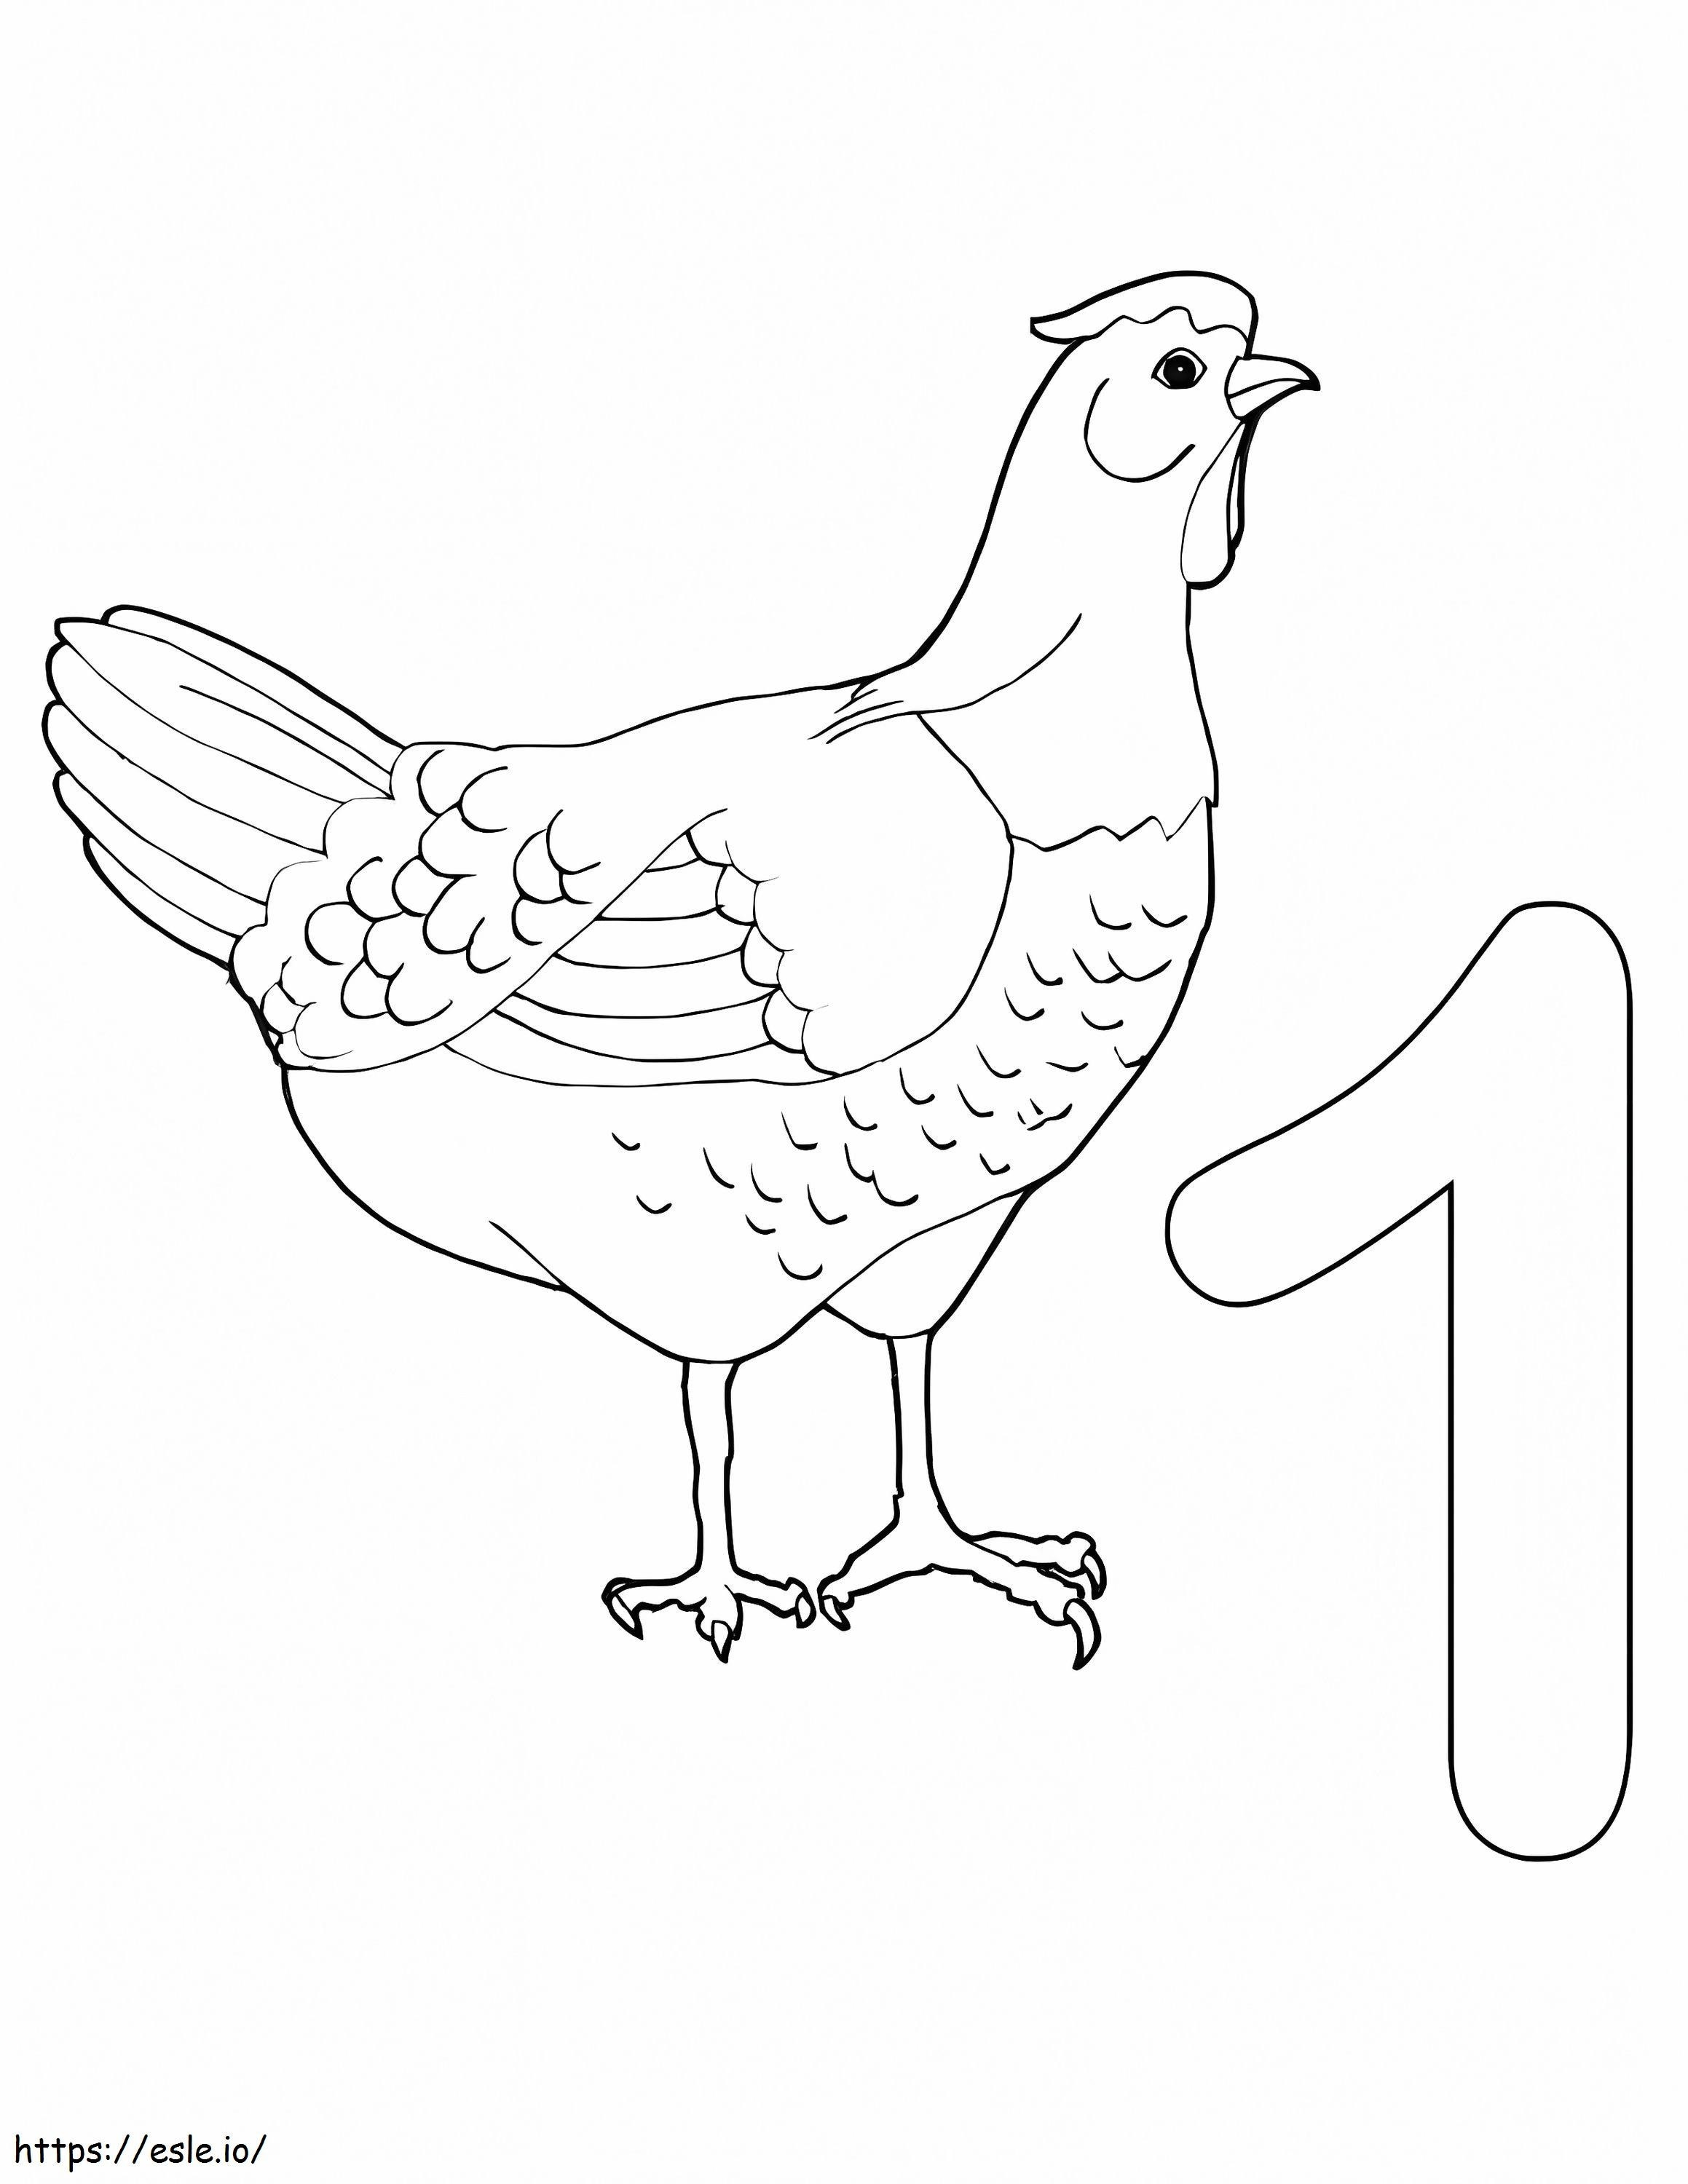 Numero 1 ja kana värityskuva